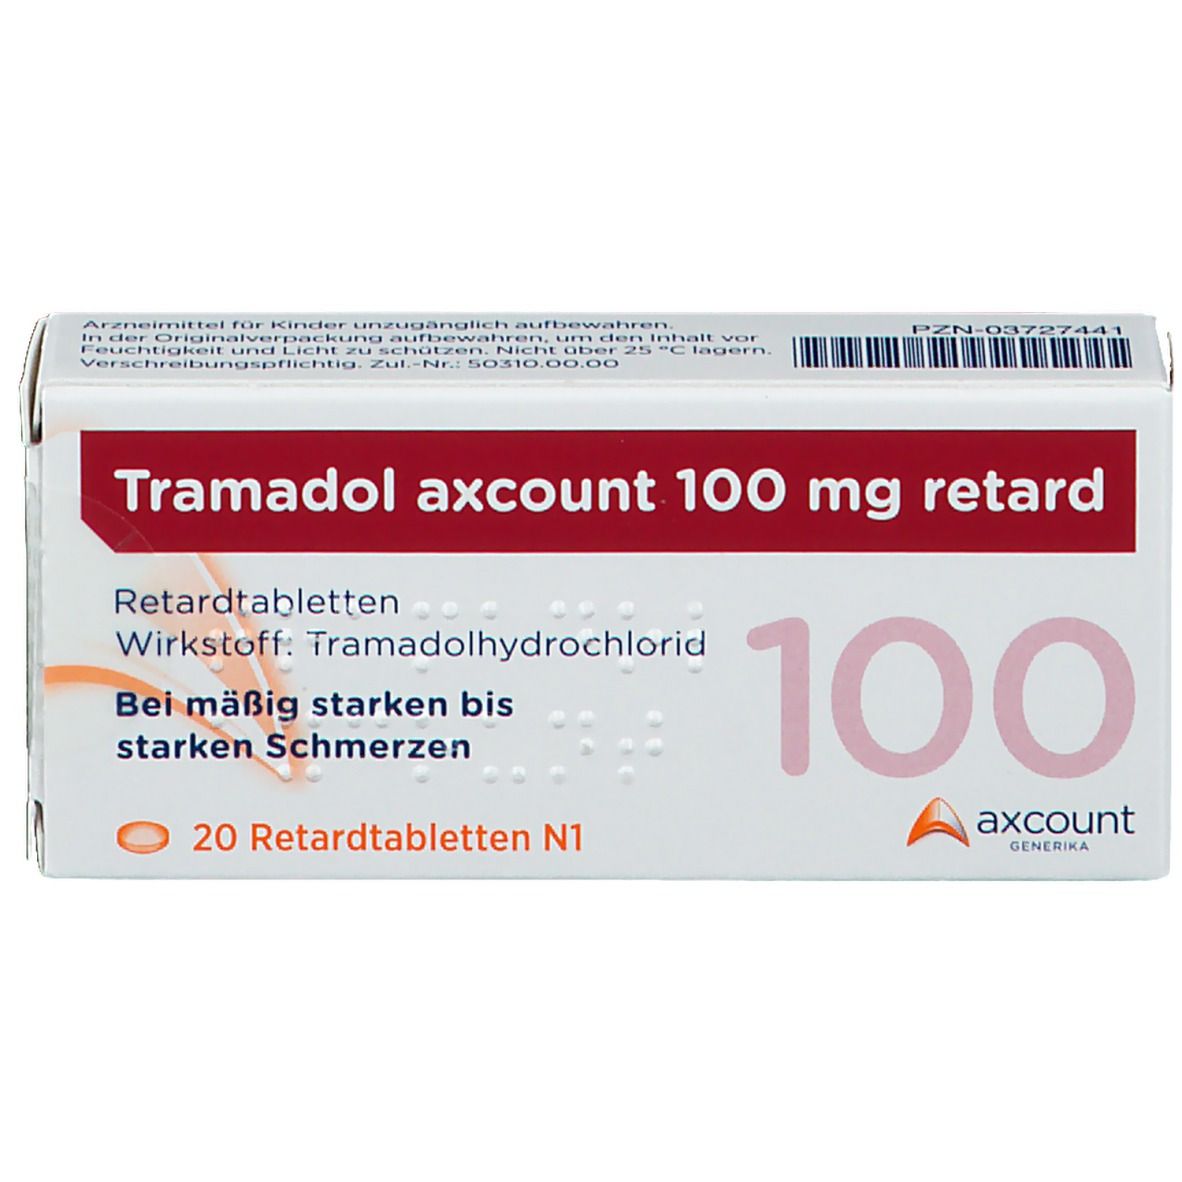 Tramadol axcount 100 mg retard